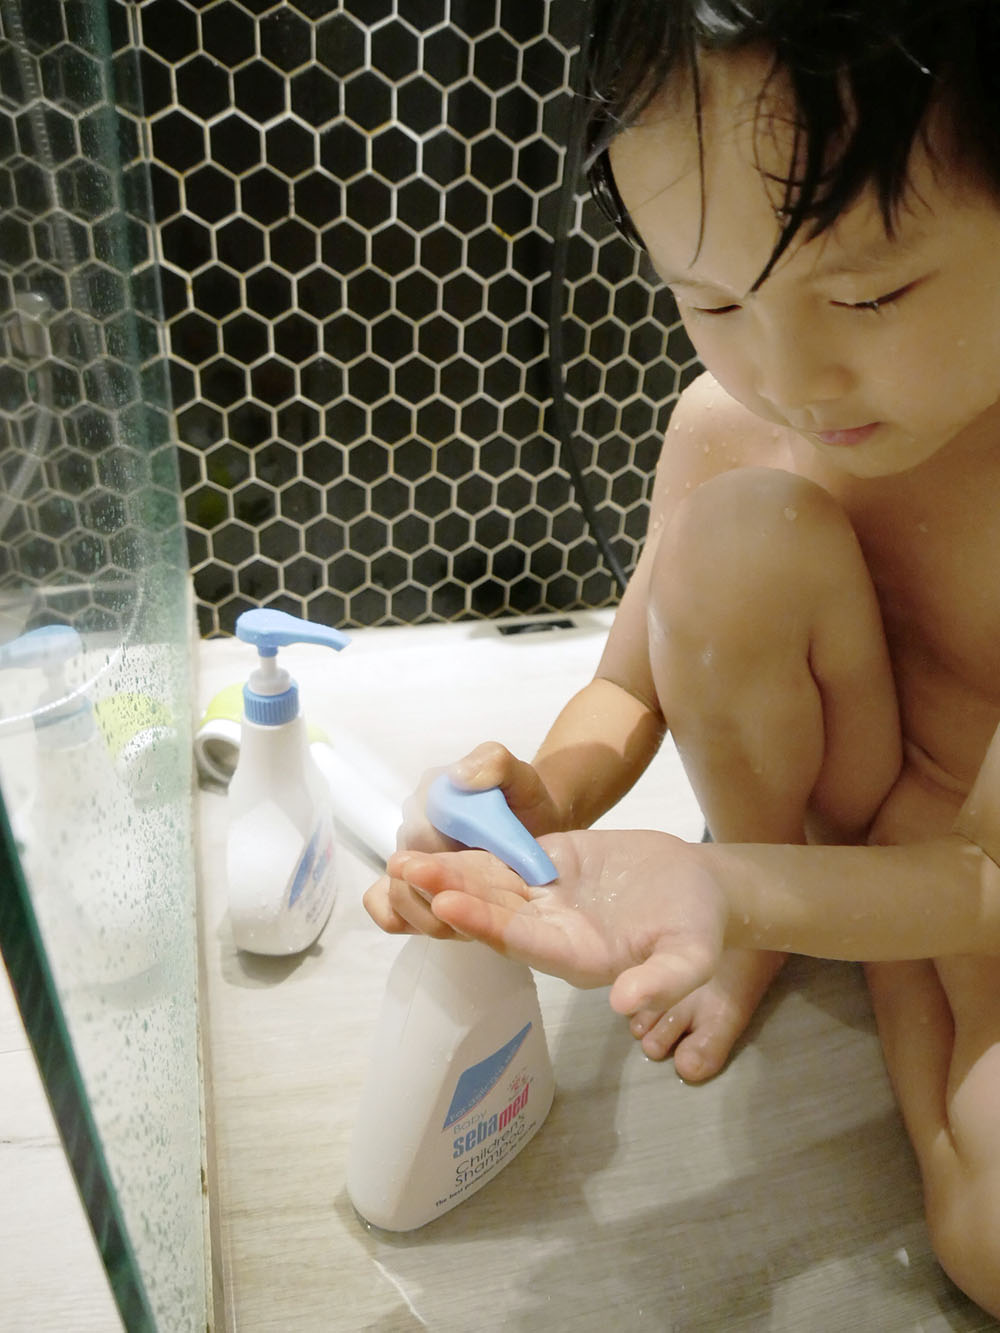 [育兒] 德國施巴5.5嬰兒泡泡浴露.給小朋友溫柔清潔呵護.讓小朋友好愛洗澡的秘密武器